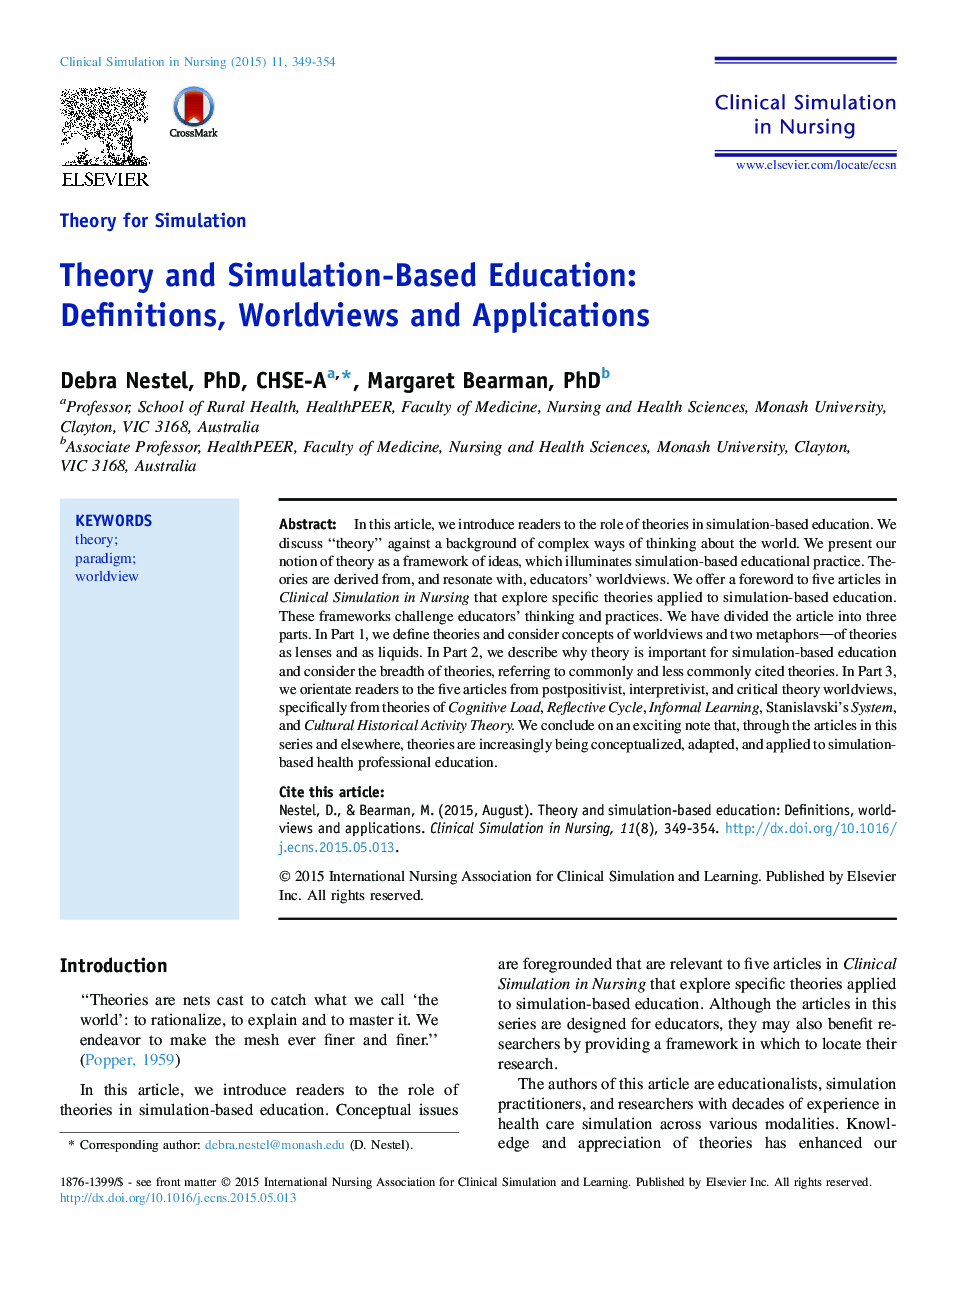 نظریه شبیه سازی تئوری و آموزش مبتنی بر شبیه سازی: تعاریف، جهان بینی و برنامه های کاربردی 